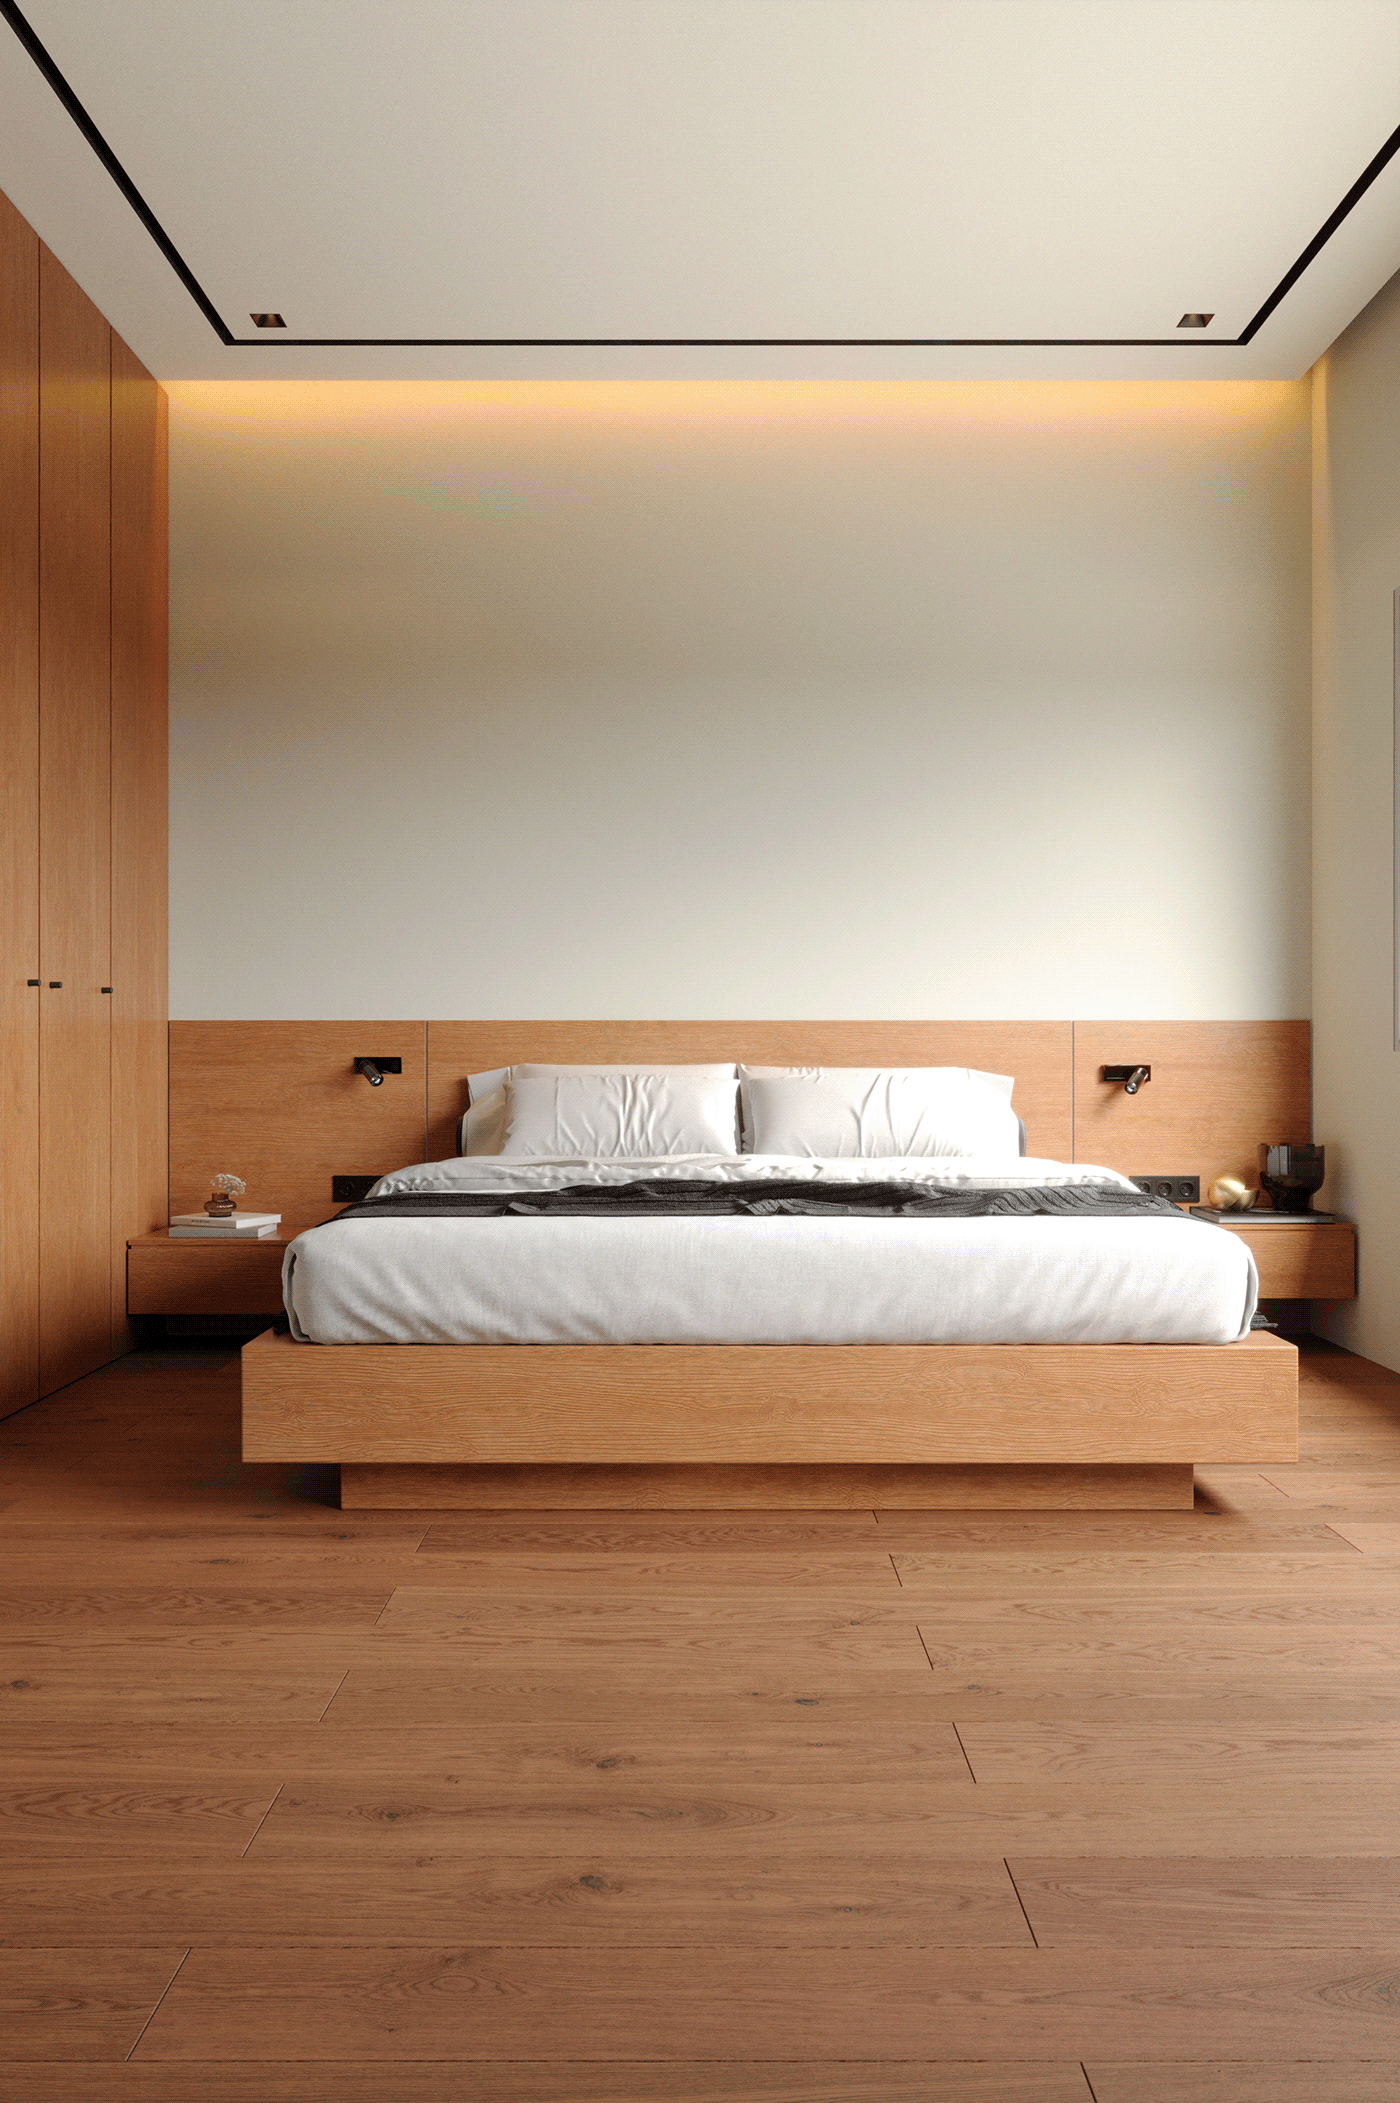 cozy modern wood bedroom Bedroom interior bedroom design bed bedroomdesign Render interior design 